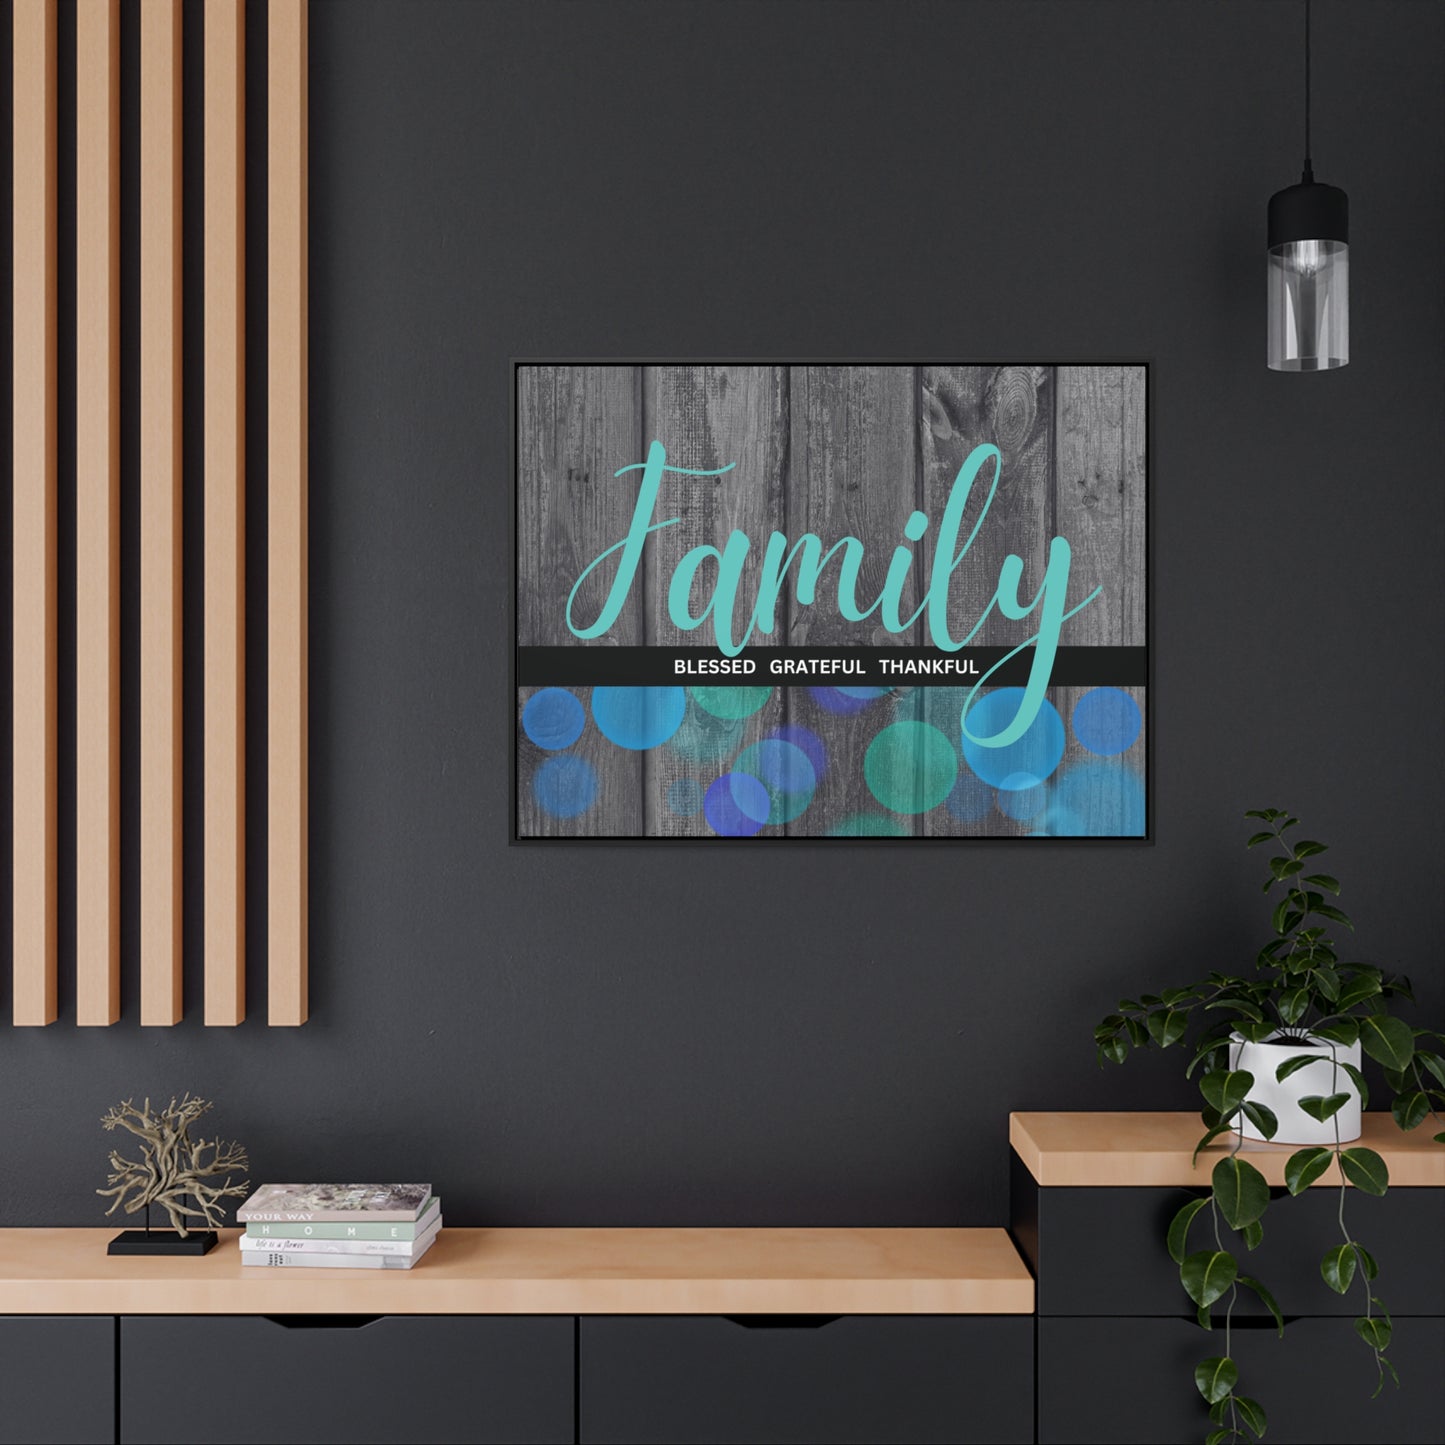 Arte cristiano de la pared: familia, bendecida, agradecida, agradecida (marco flotante)